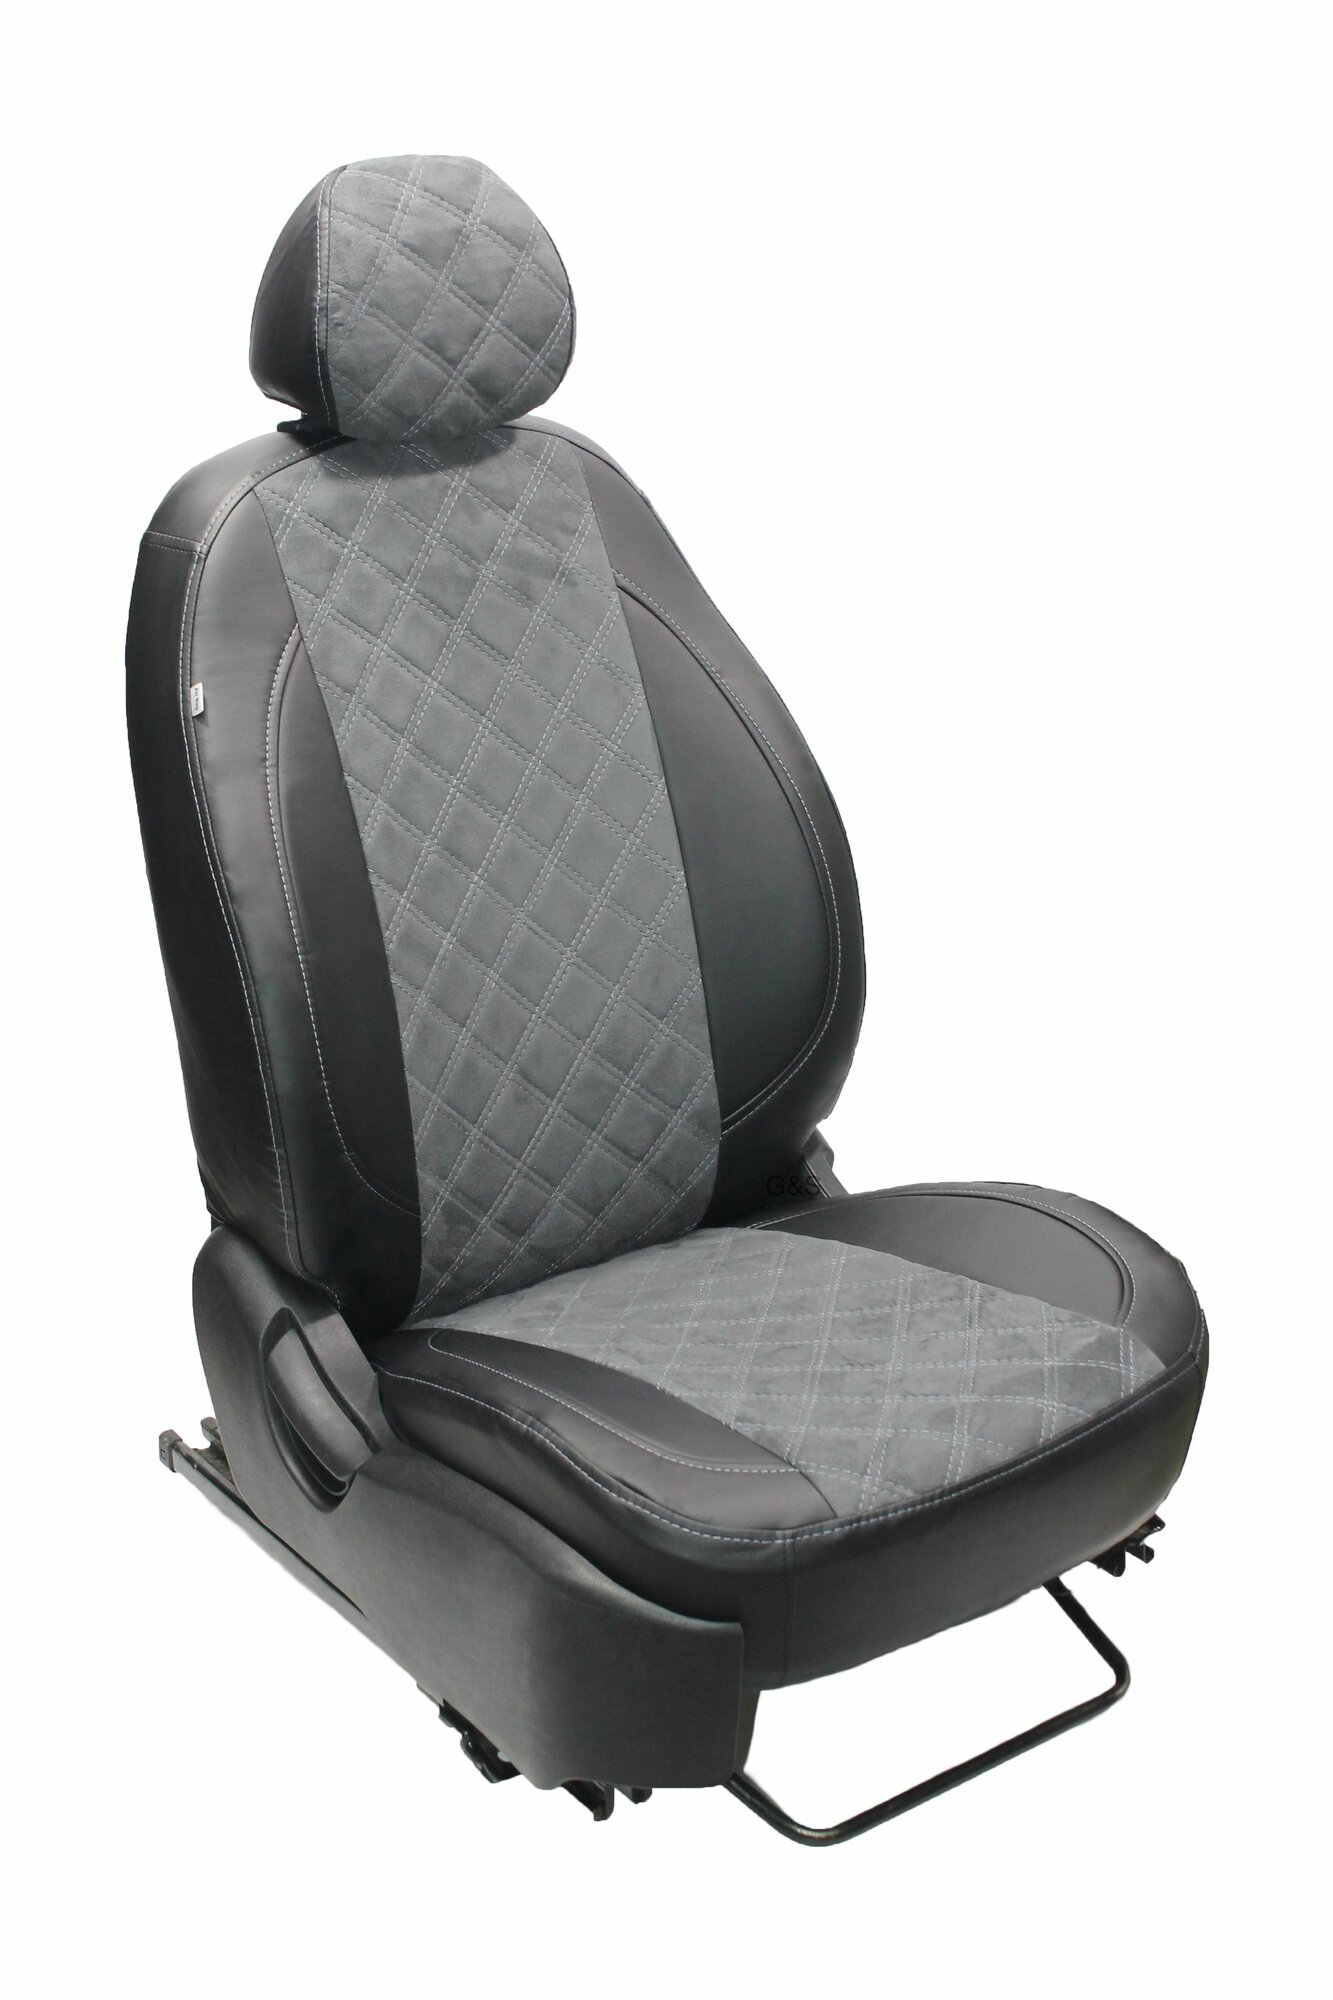 Чехлы для автомобильных сидений комплект Premium на FORD FOCUS 2 (2004-2011) COMFORT, AMBIENTE, TREND седан, хэтчбек, универсал без задн. подлокот, авточехлы модельные, серая вставка алькантара ромб